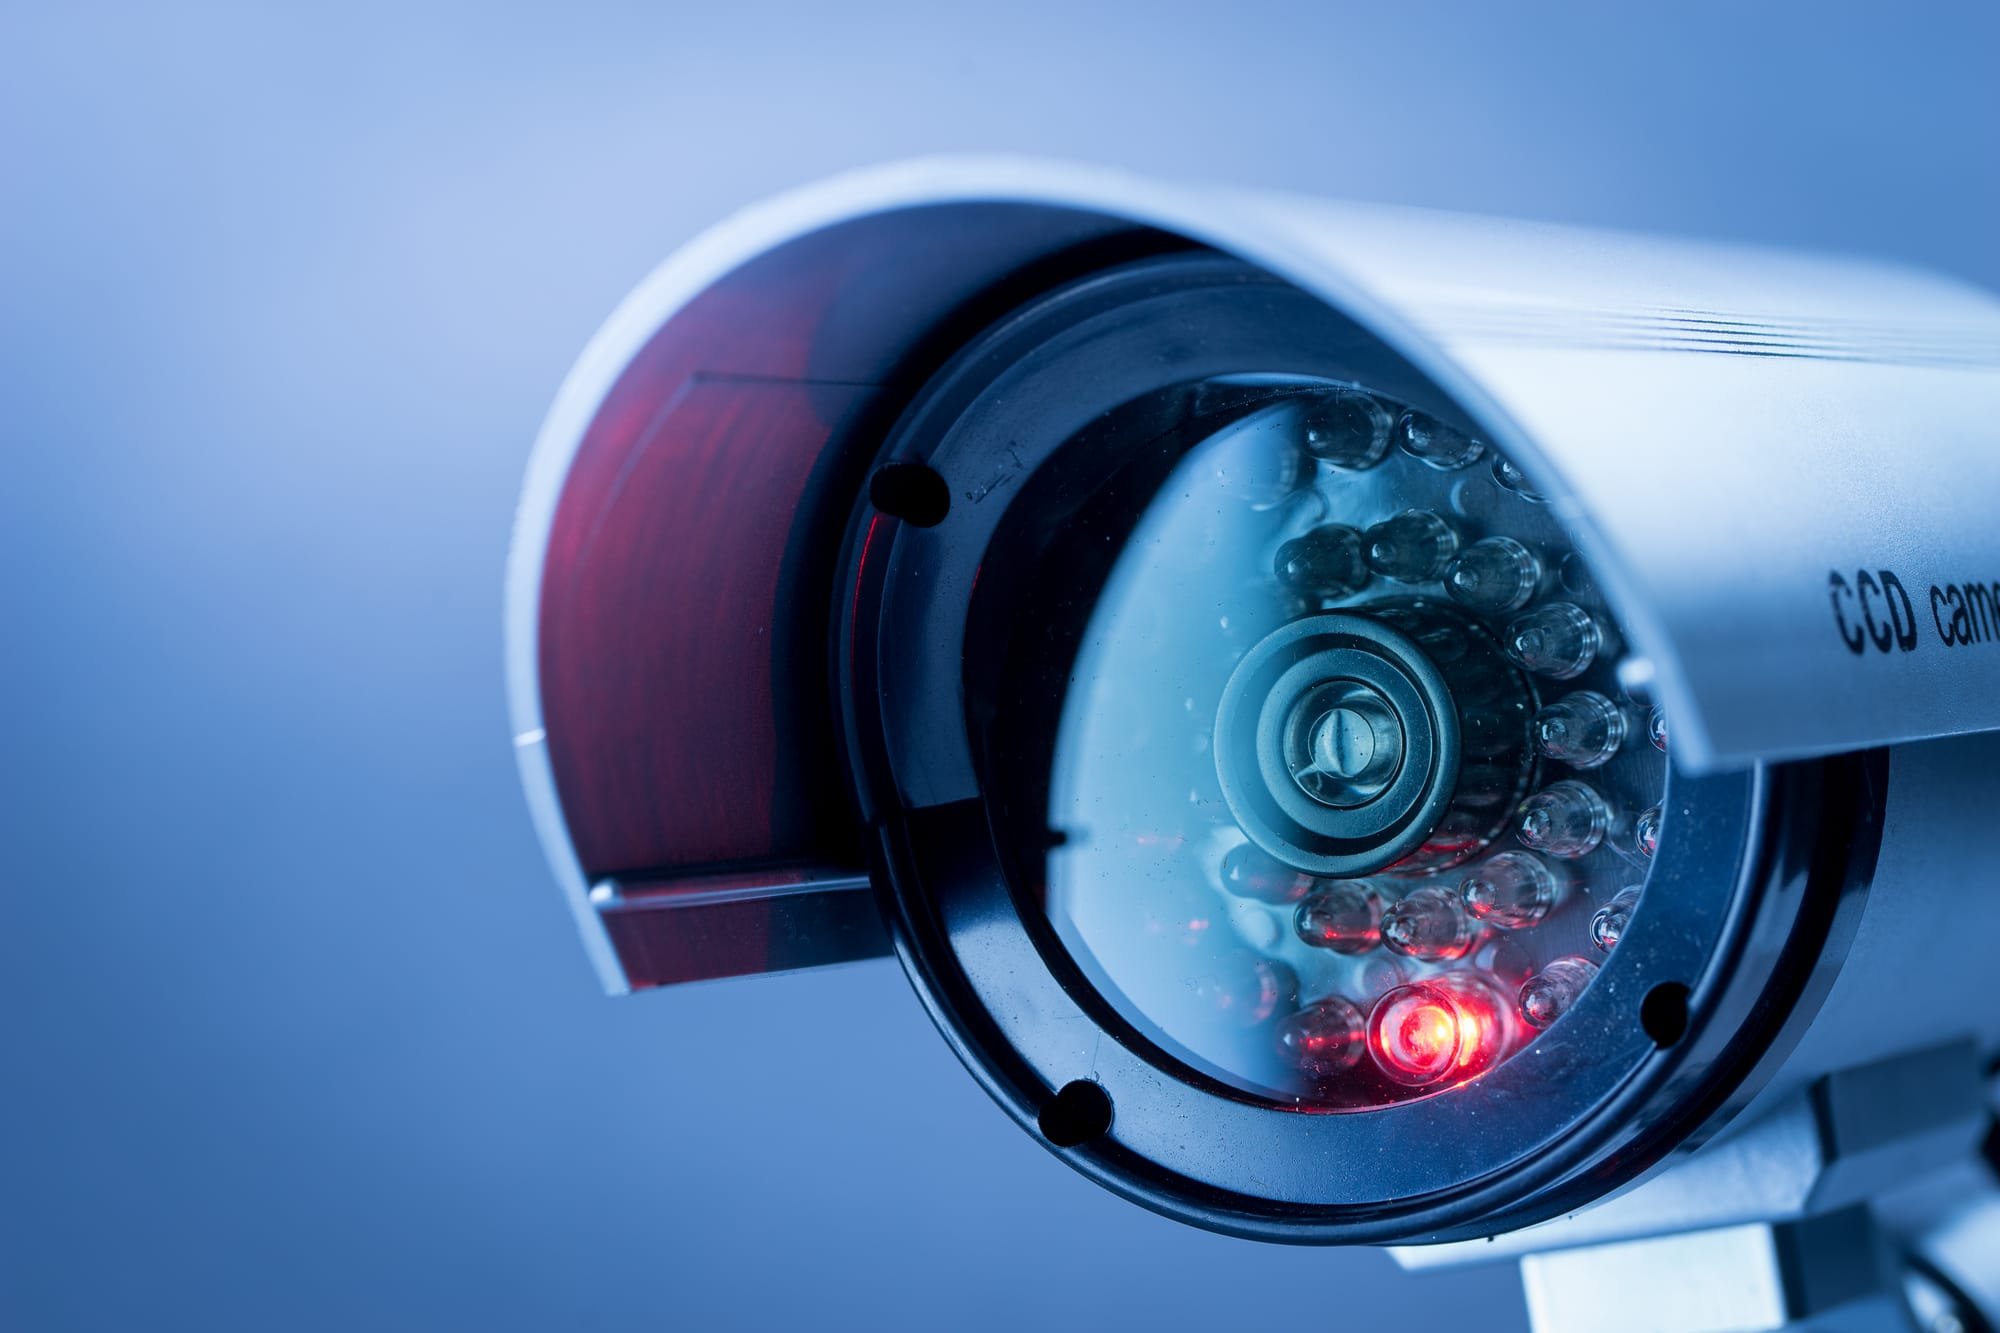 מצלמות אבטחה= פגיעה בפרטיות?